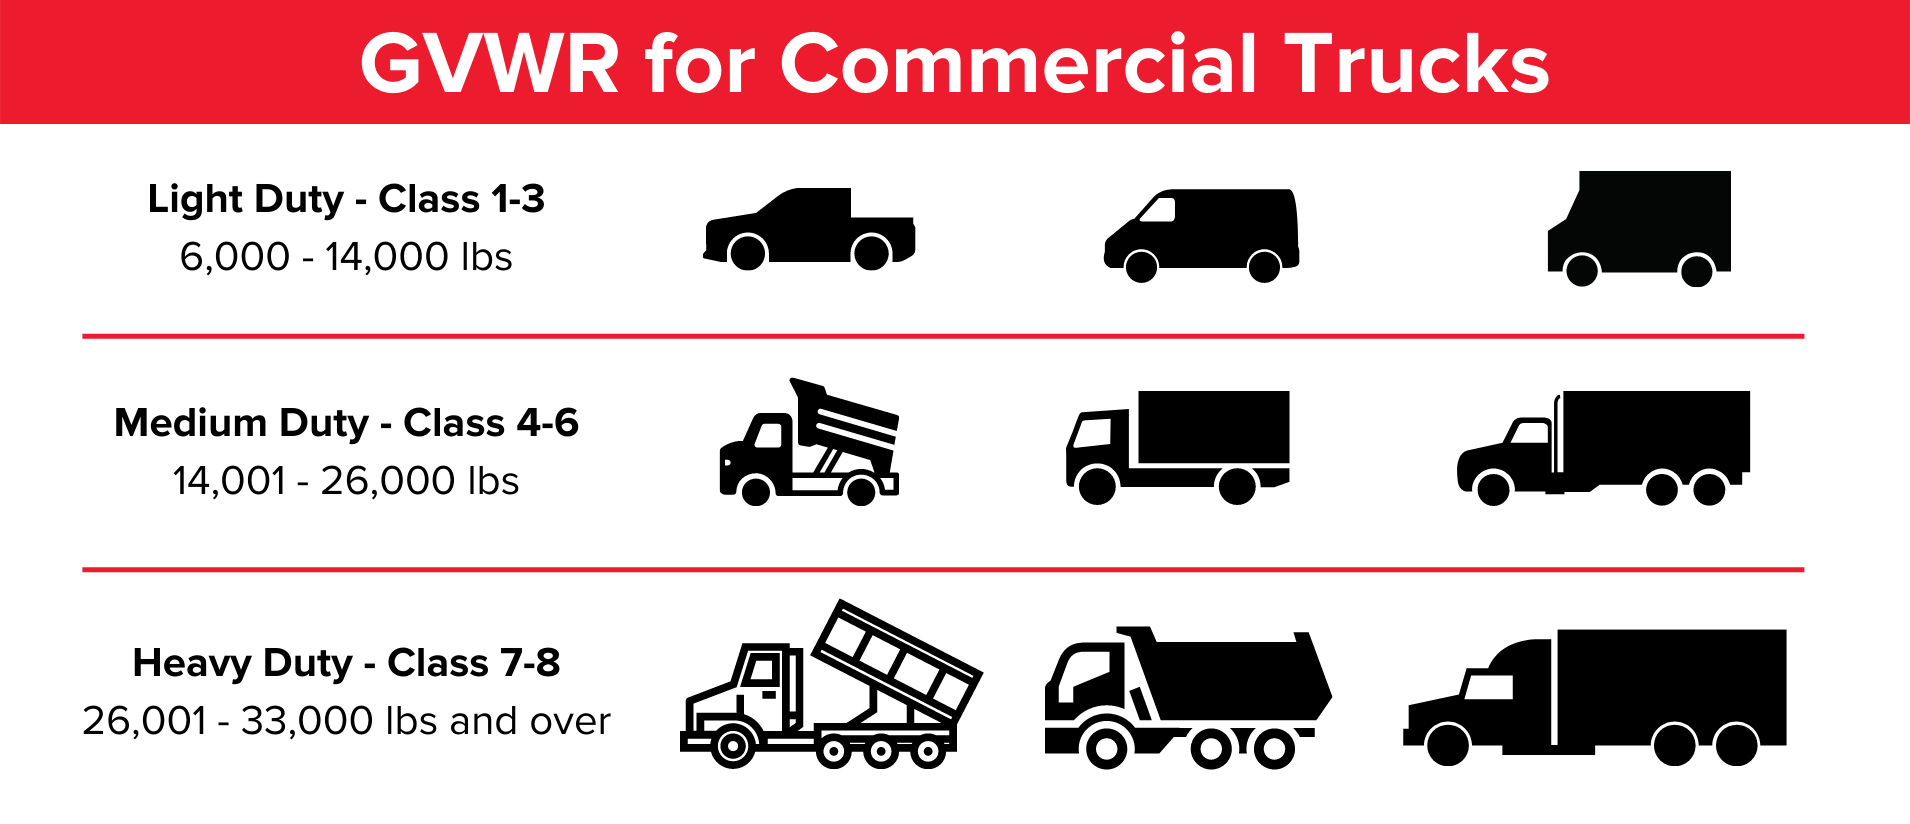 GVWR for Commercial Trucks